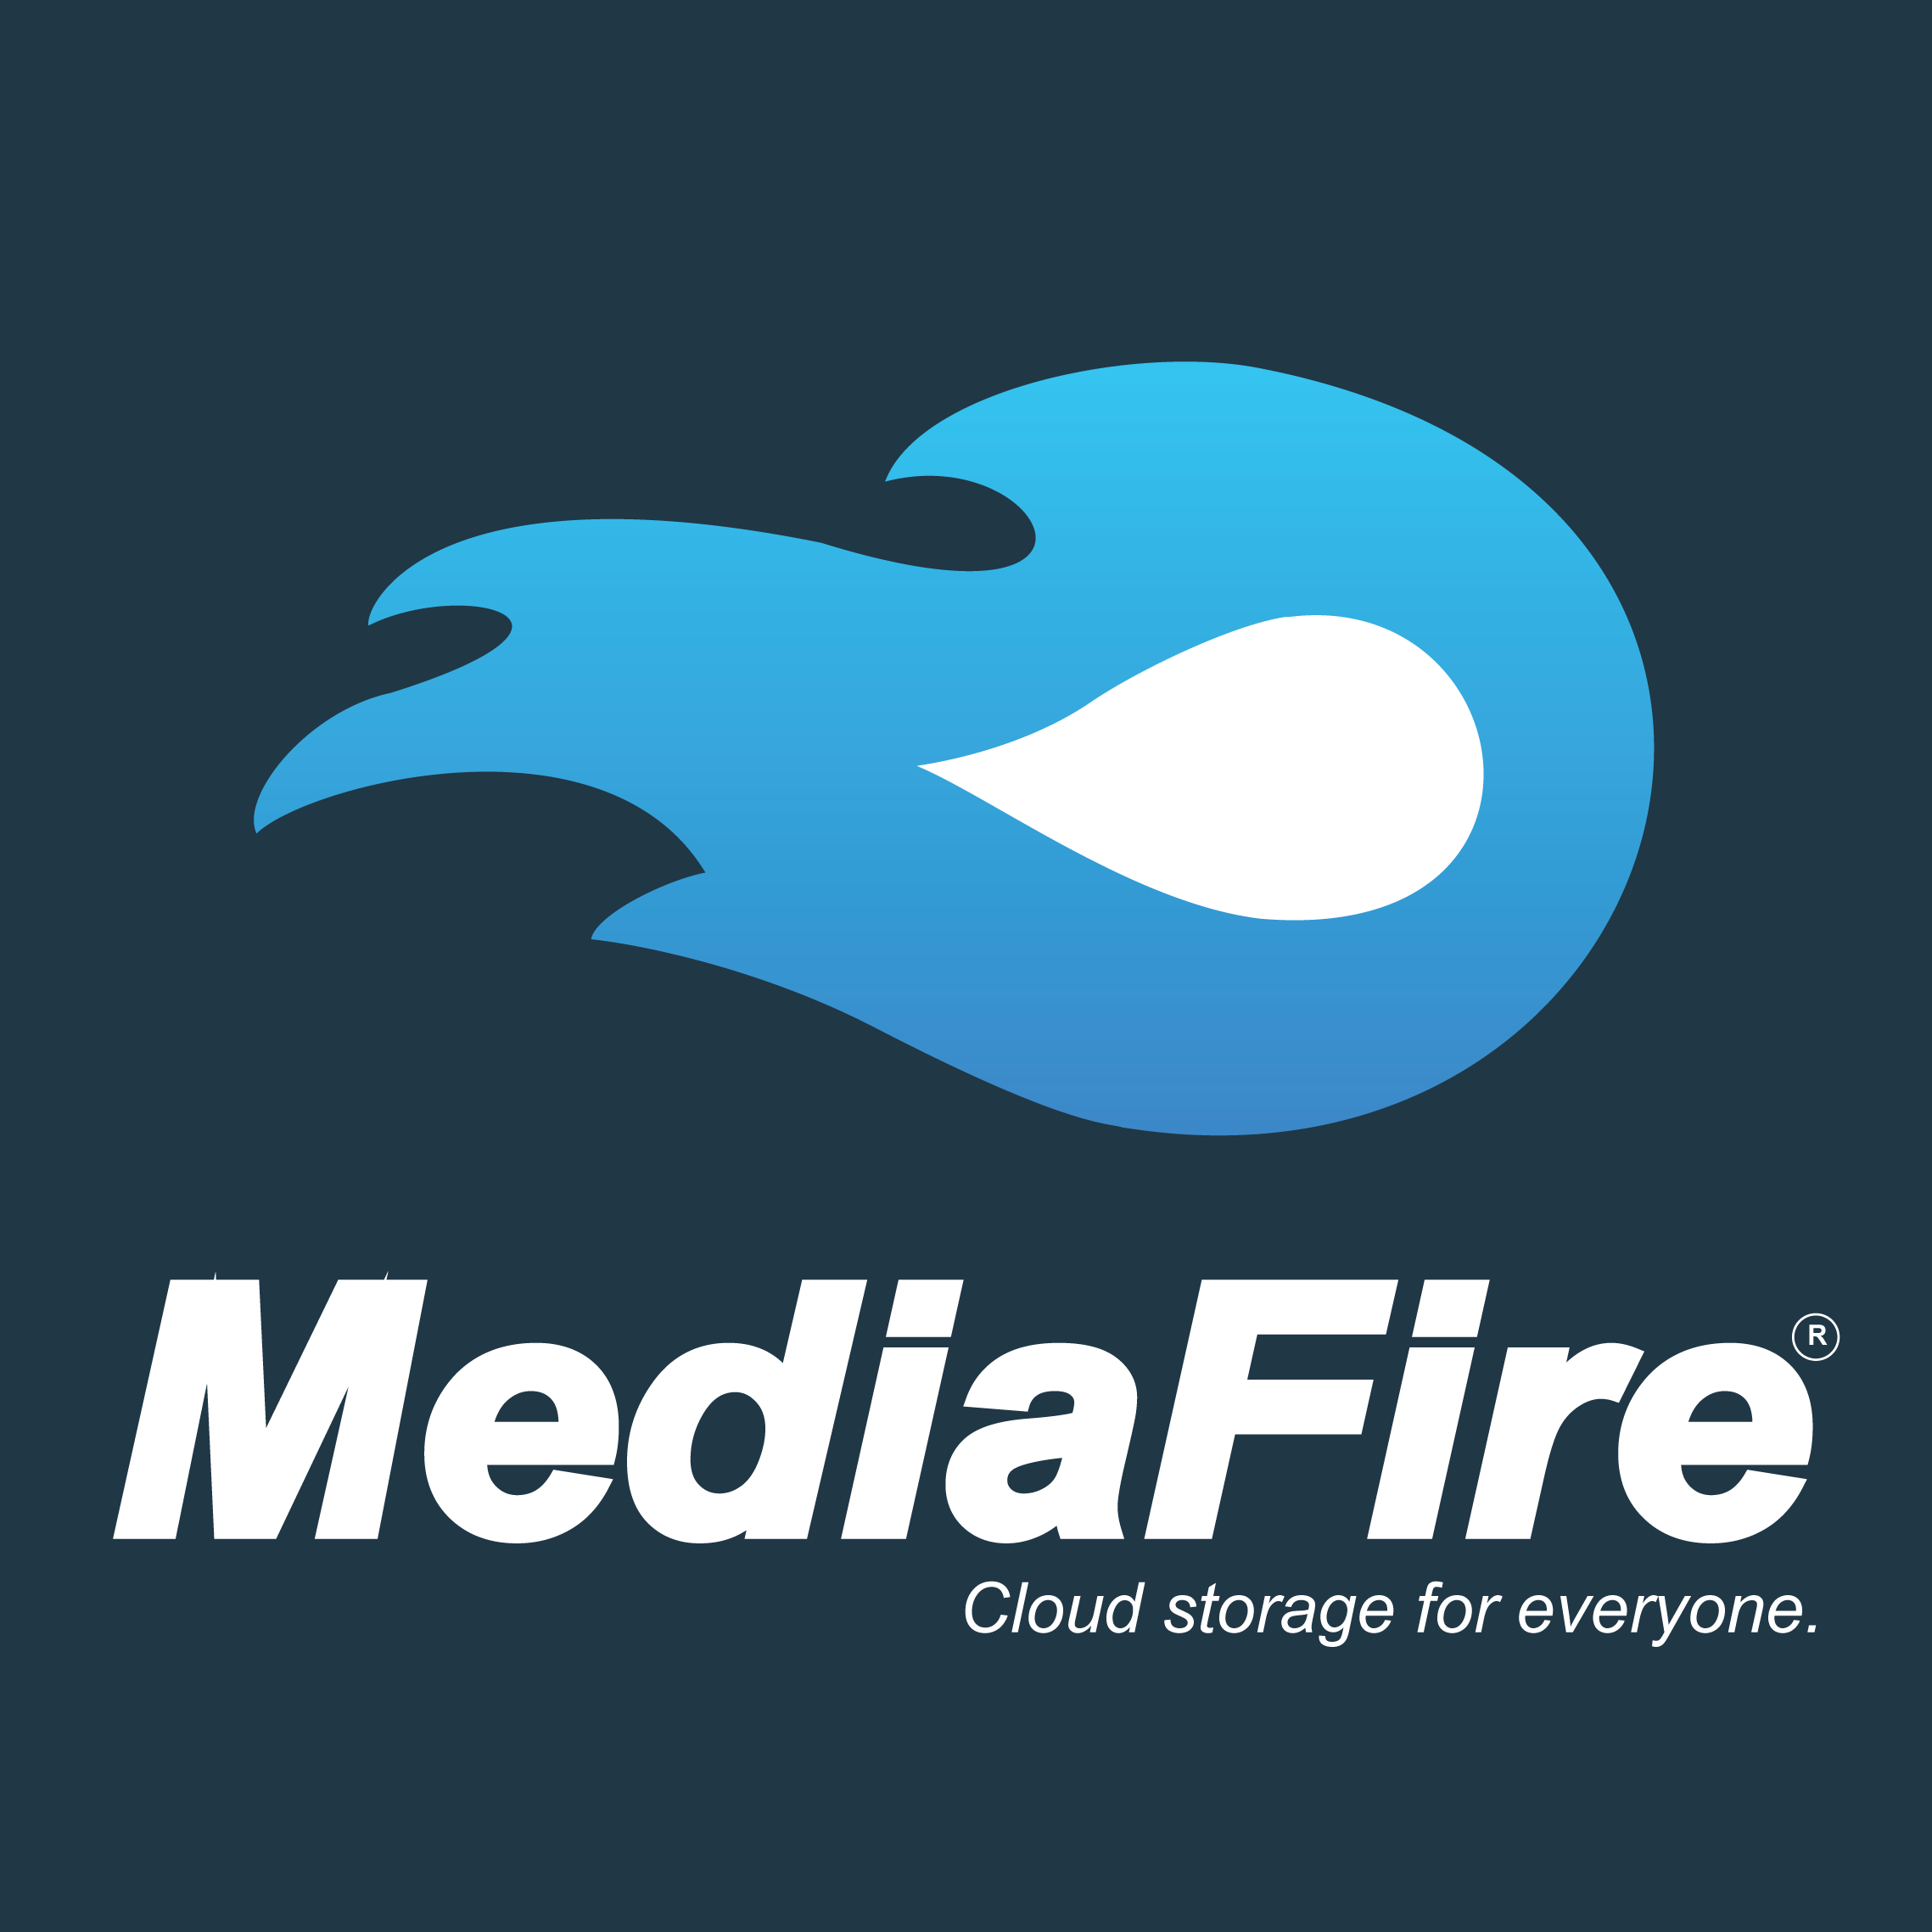 Một ứng dụng hay để lựa chọn với dung lượng lưu trữ miễn phí lớn là Mediafire